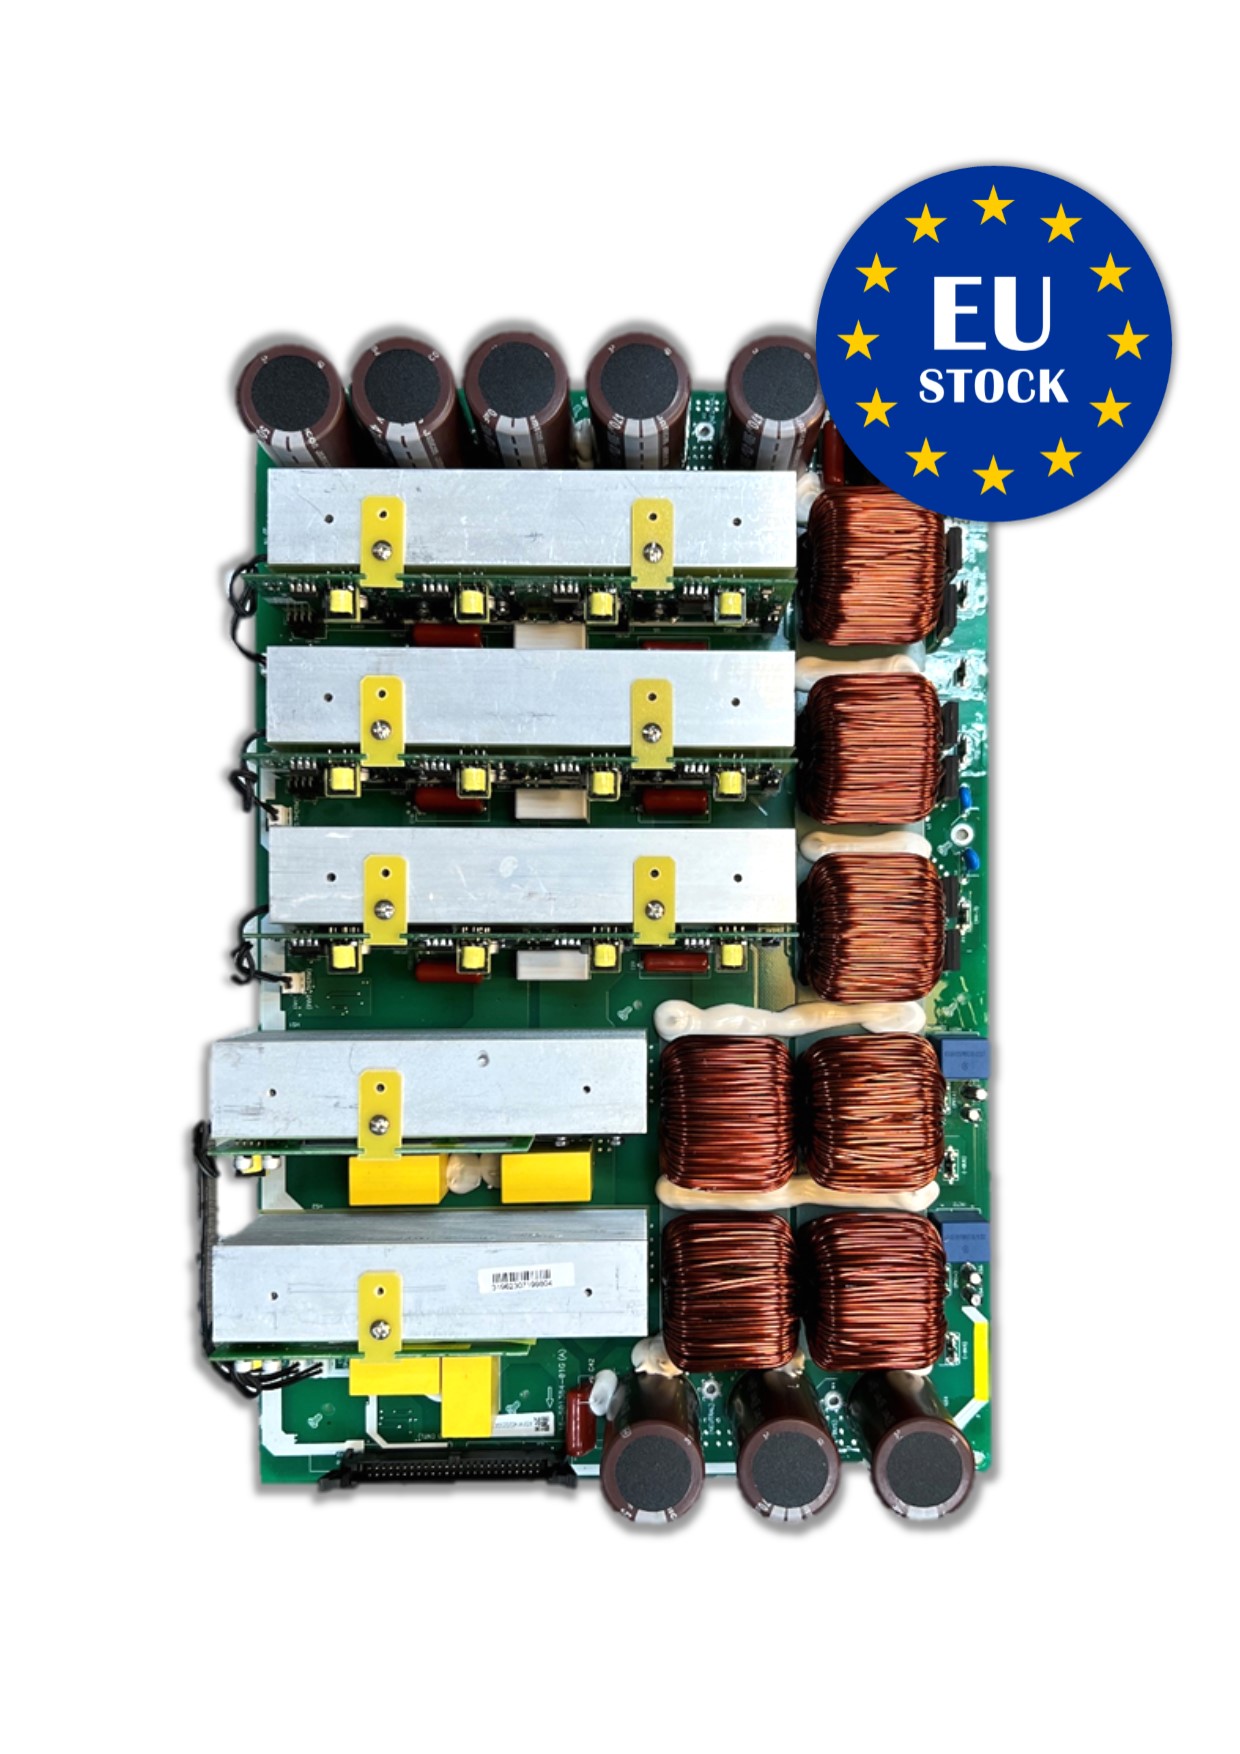 EU Stock-MPI 10K Mainboard